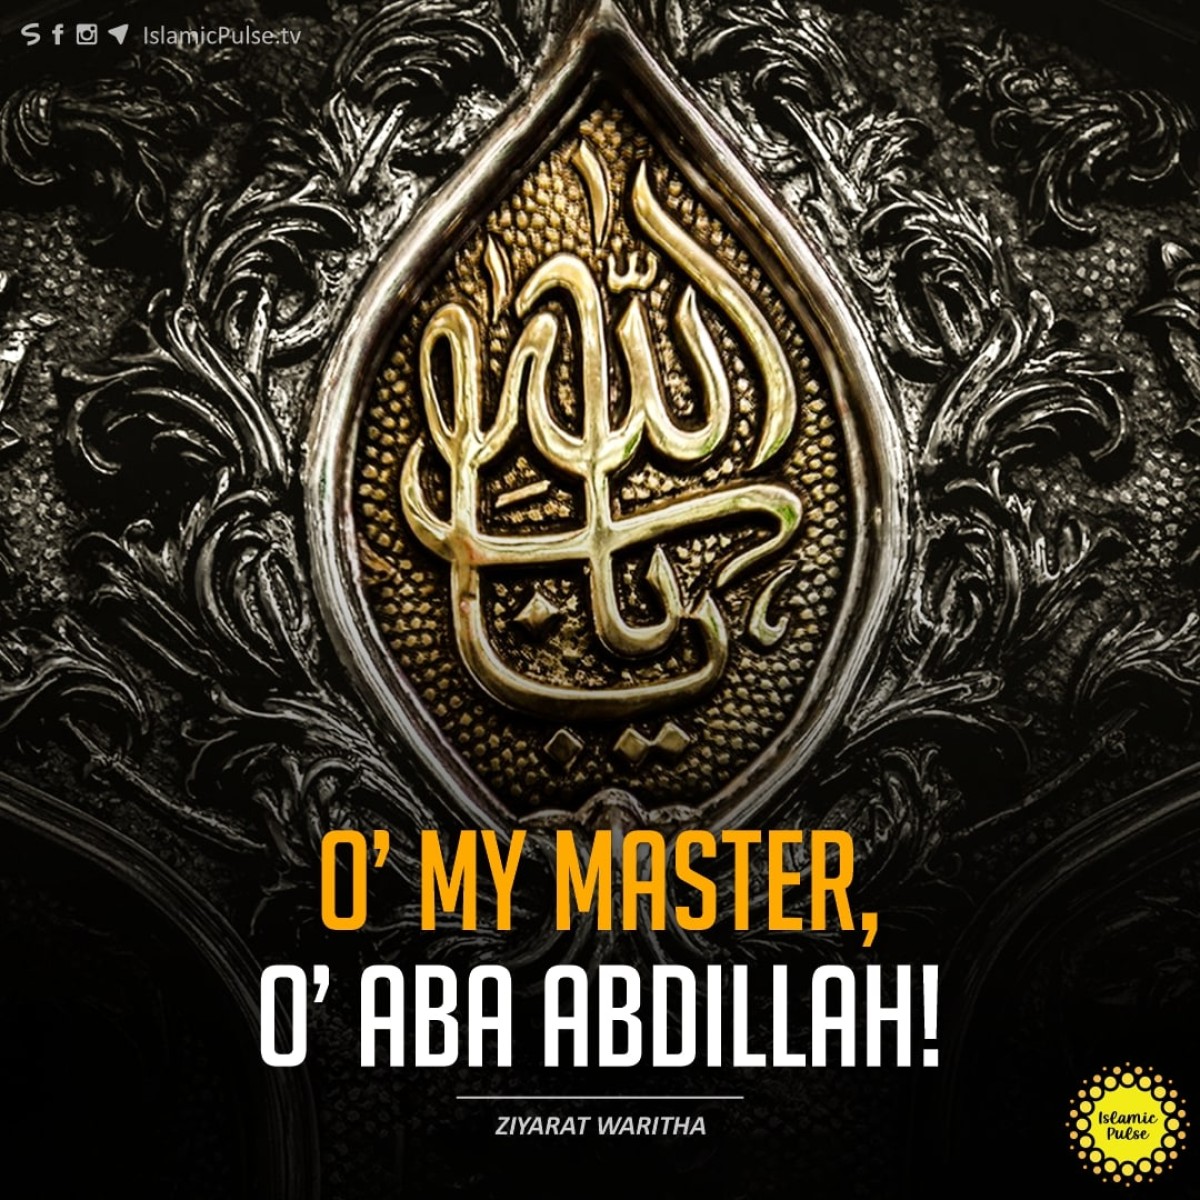 "O’ my Master, O’ Aba Abdillah!"